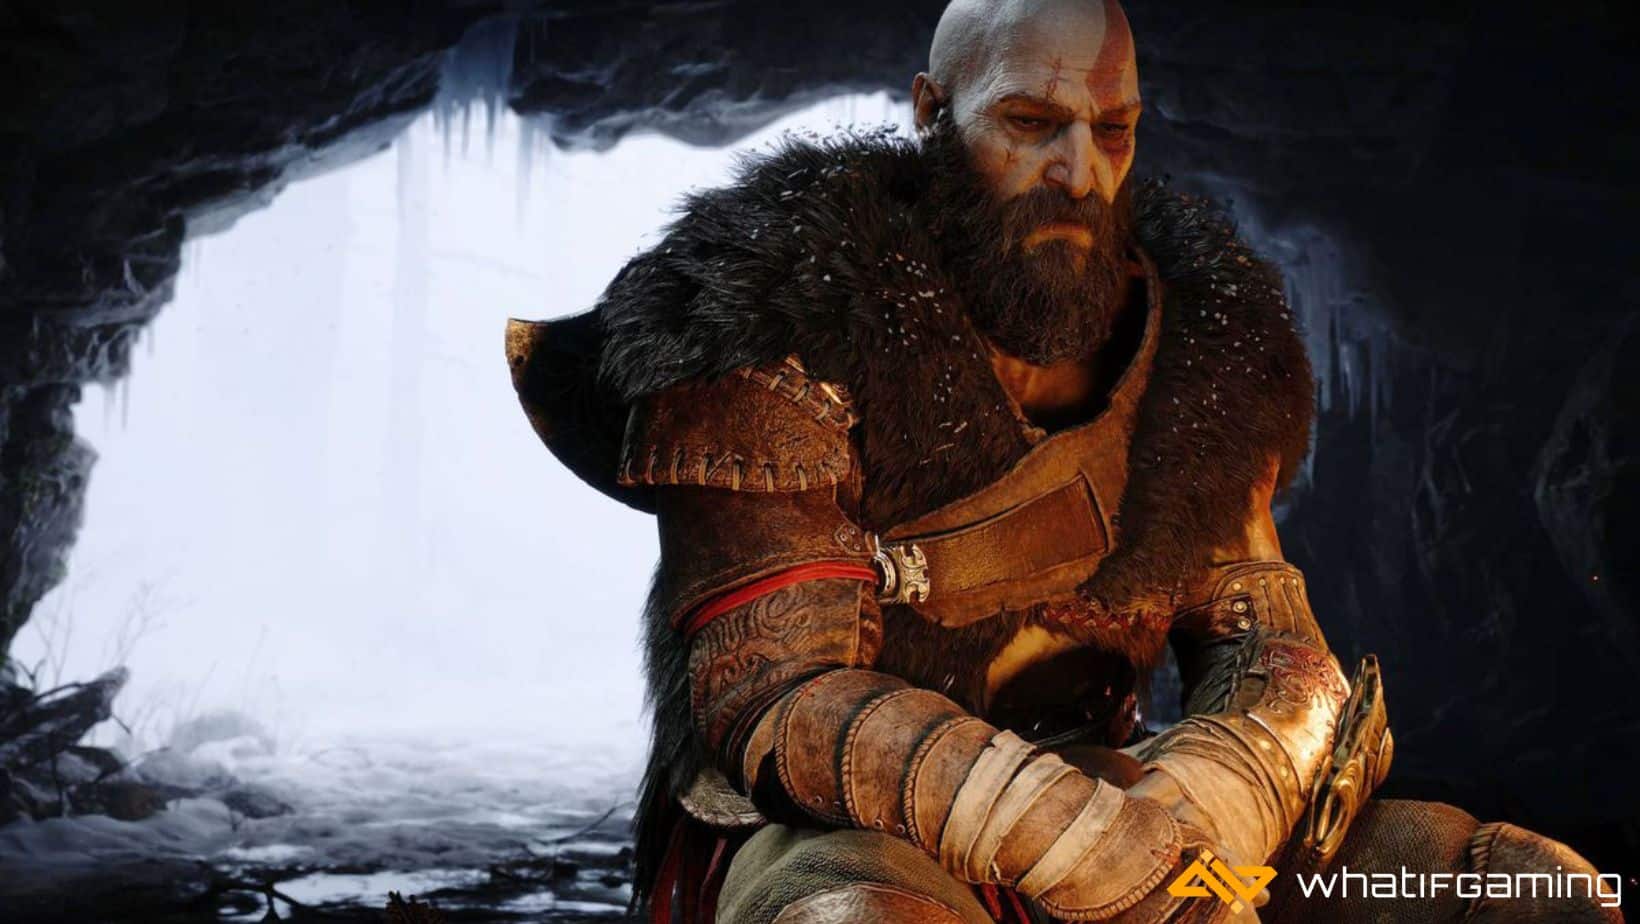 God of War serisinin son oyunu olan Ragnarok, oynanış, hikaye, karakterler ve grafikler açısından büyüleyici bir oyundur.